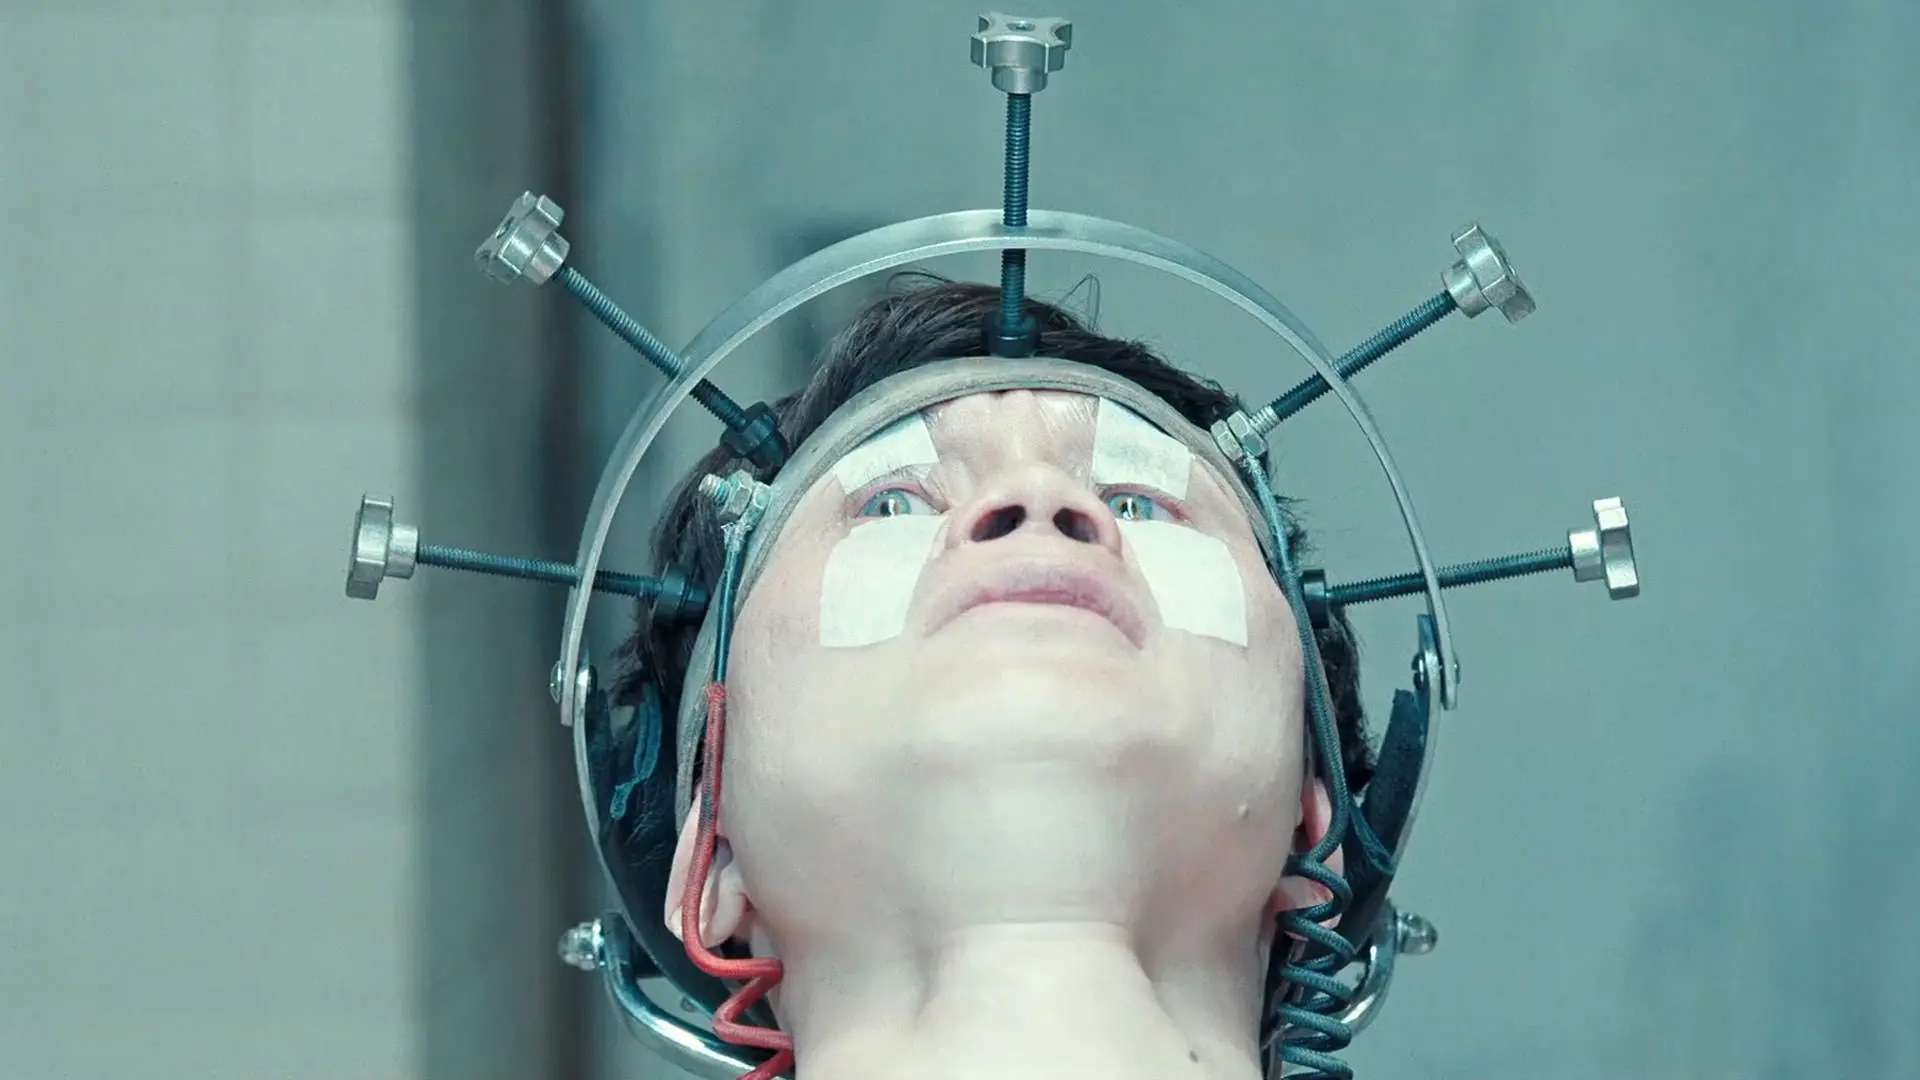 هوئا شوندی در حالی که سرش داخل دستگاهی فلزی ثابت نگه داشته‌ شده است با چهره‌ای نگران به شکنجه شدن واکنش نشان می‌دهد در نمایی از سریال هواخواه